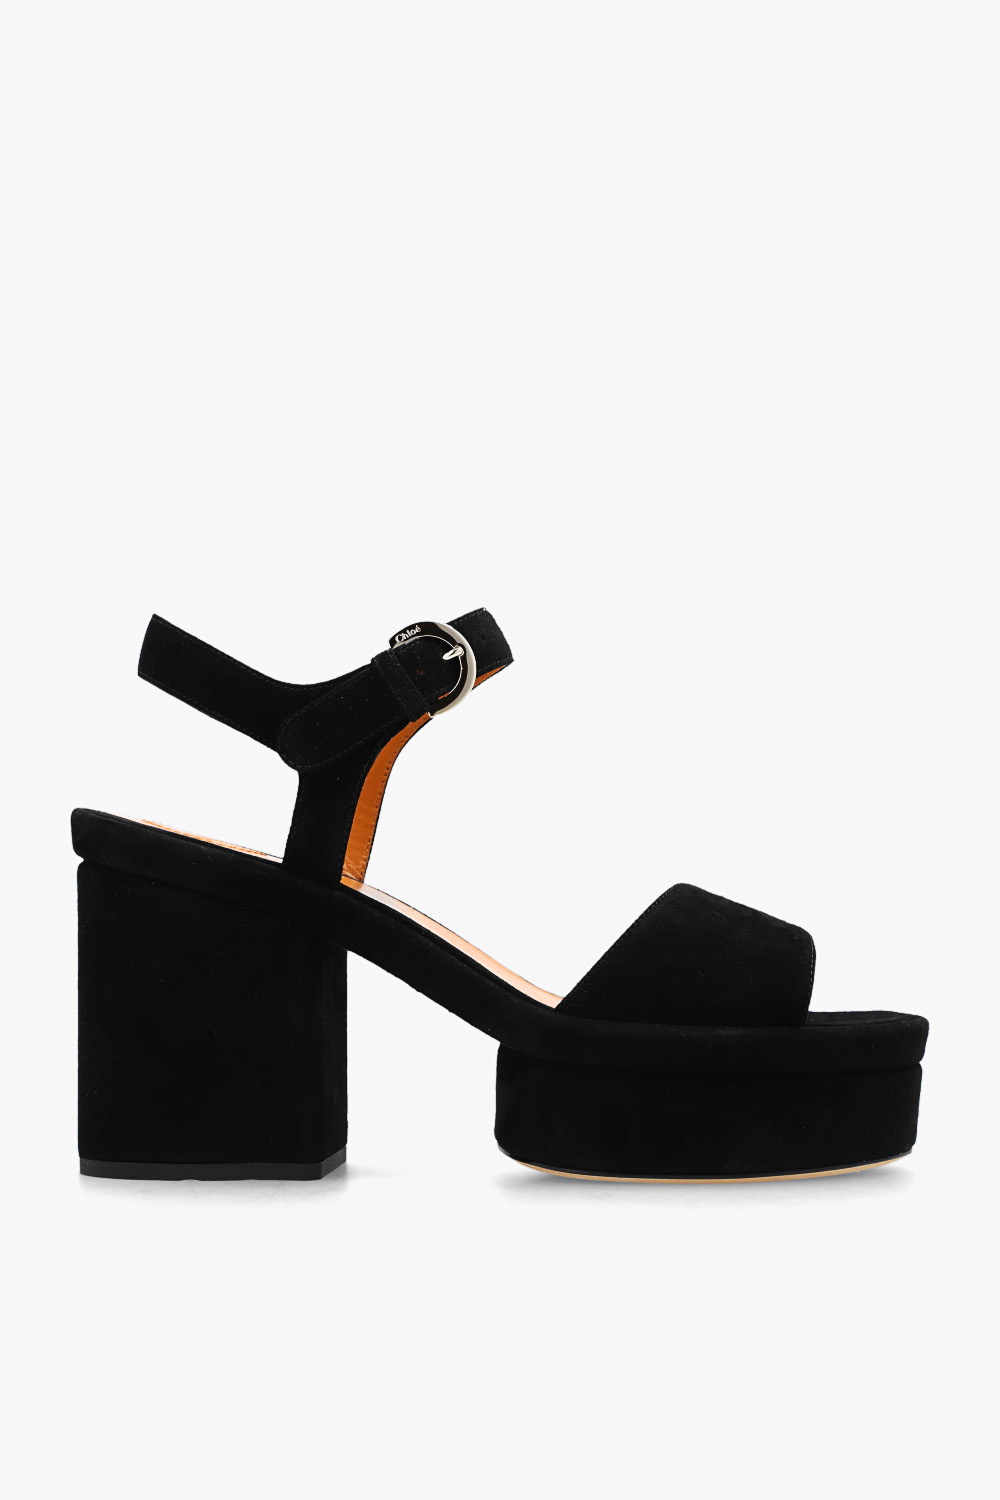 Chloé ‘Odina’ heeled sandals | Women's Shoes | Vitkac